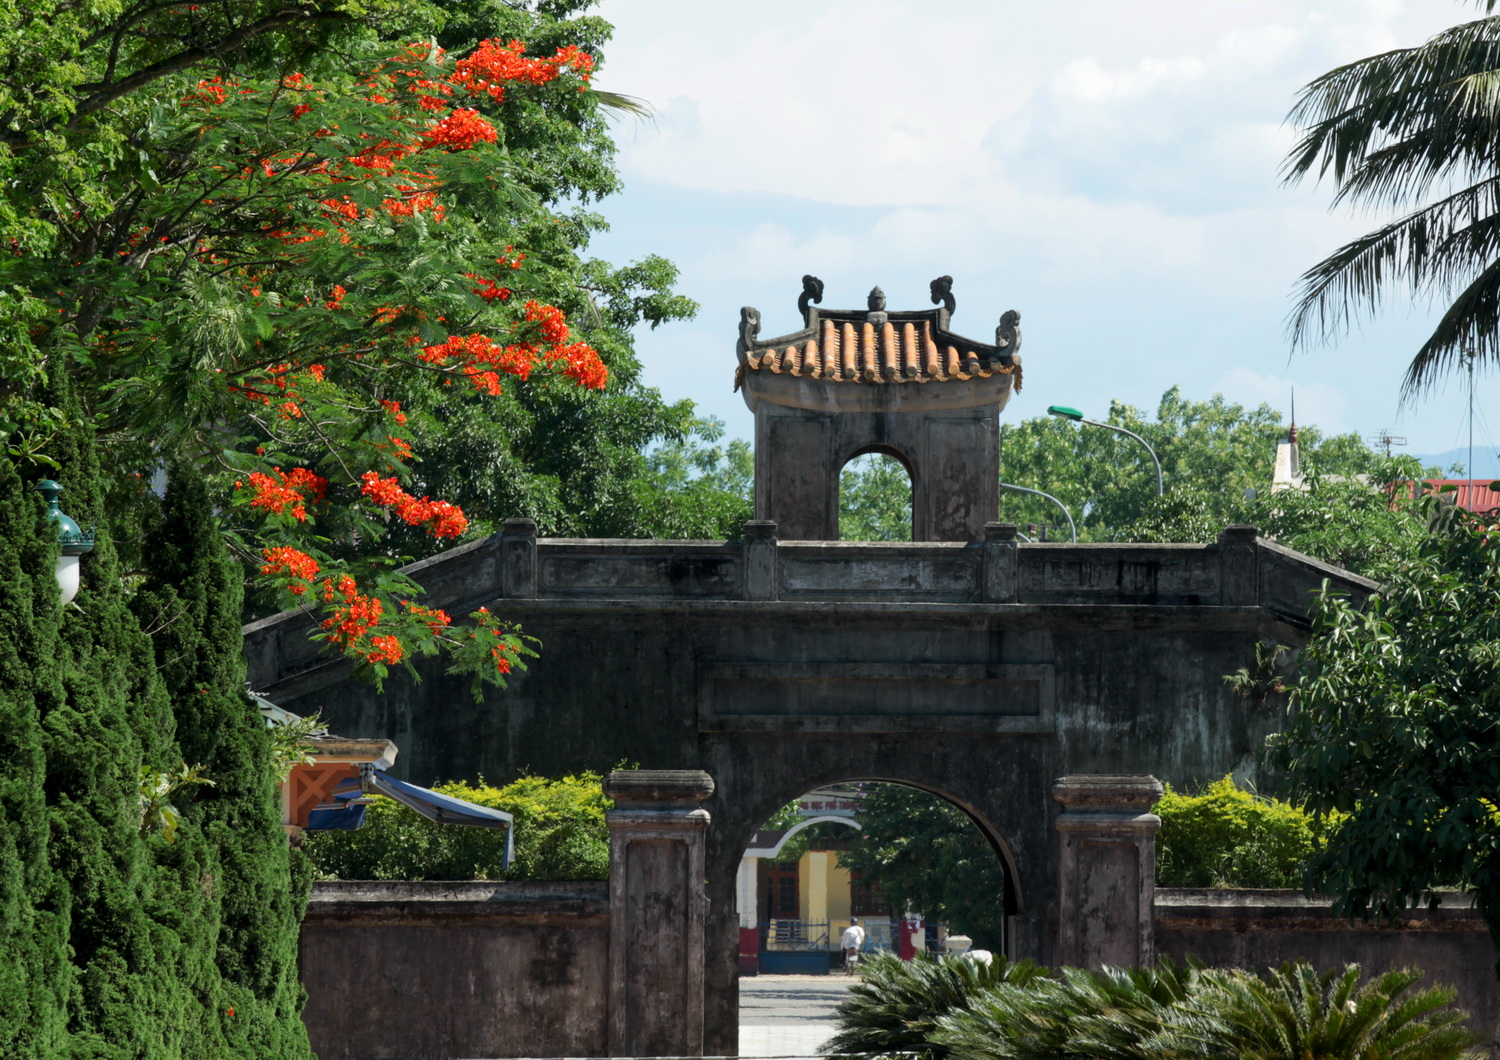 Thành cổ Quảng Trị - Cẩm nang du lịch bụi Quảng Trị 2016